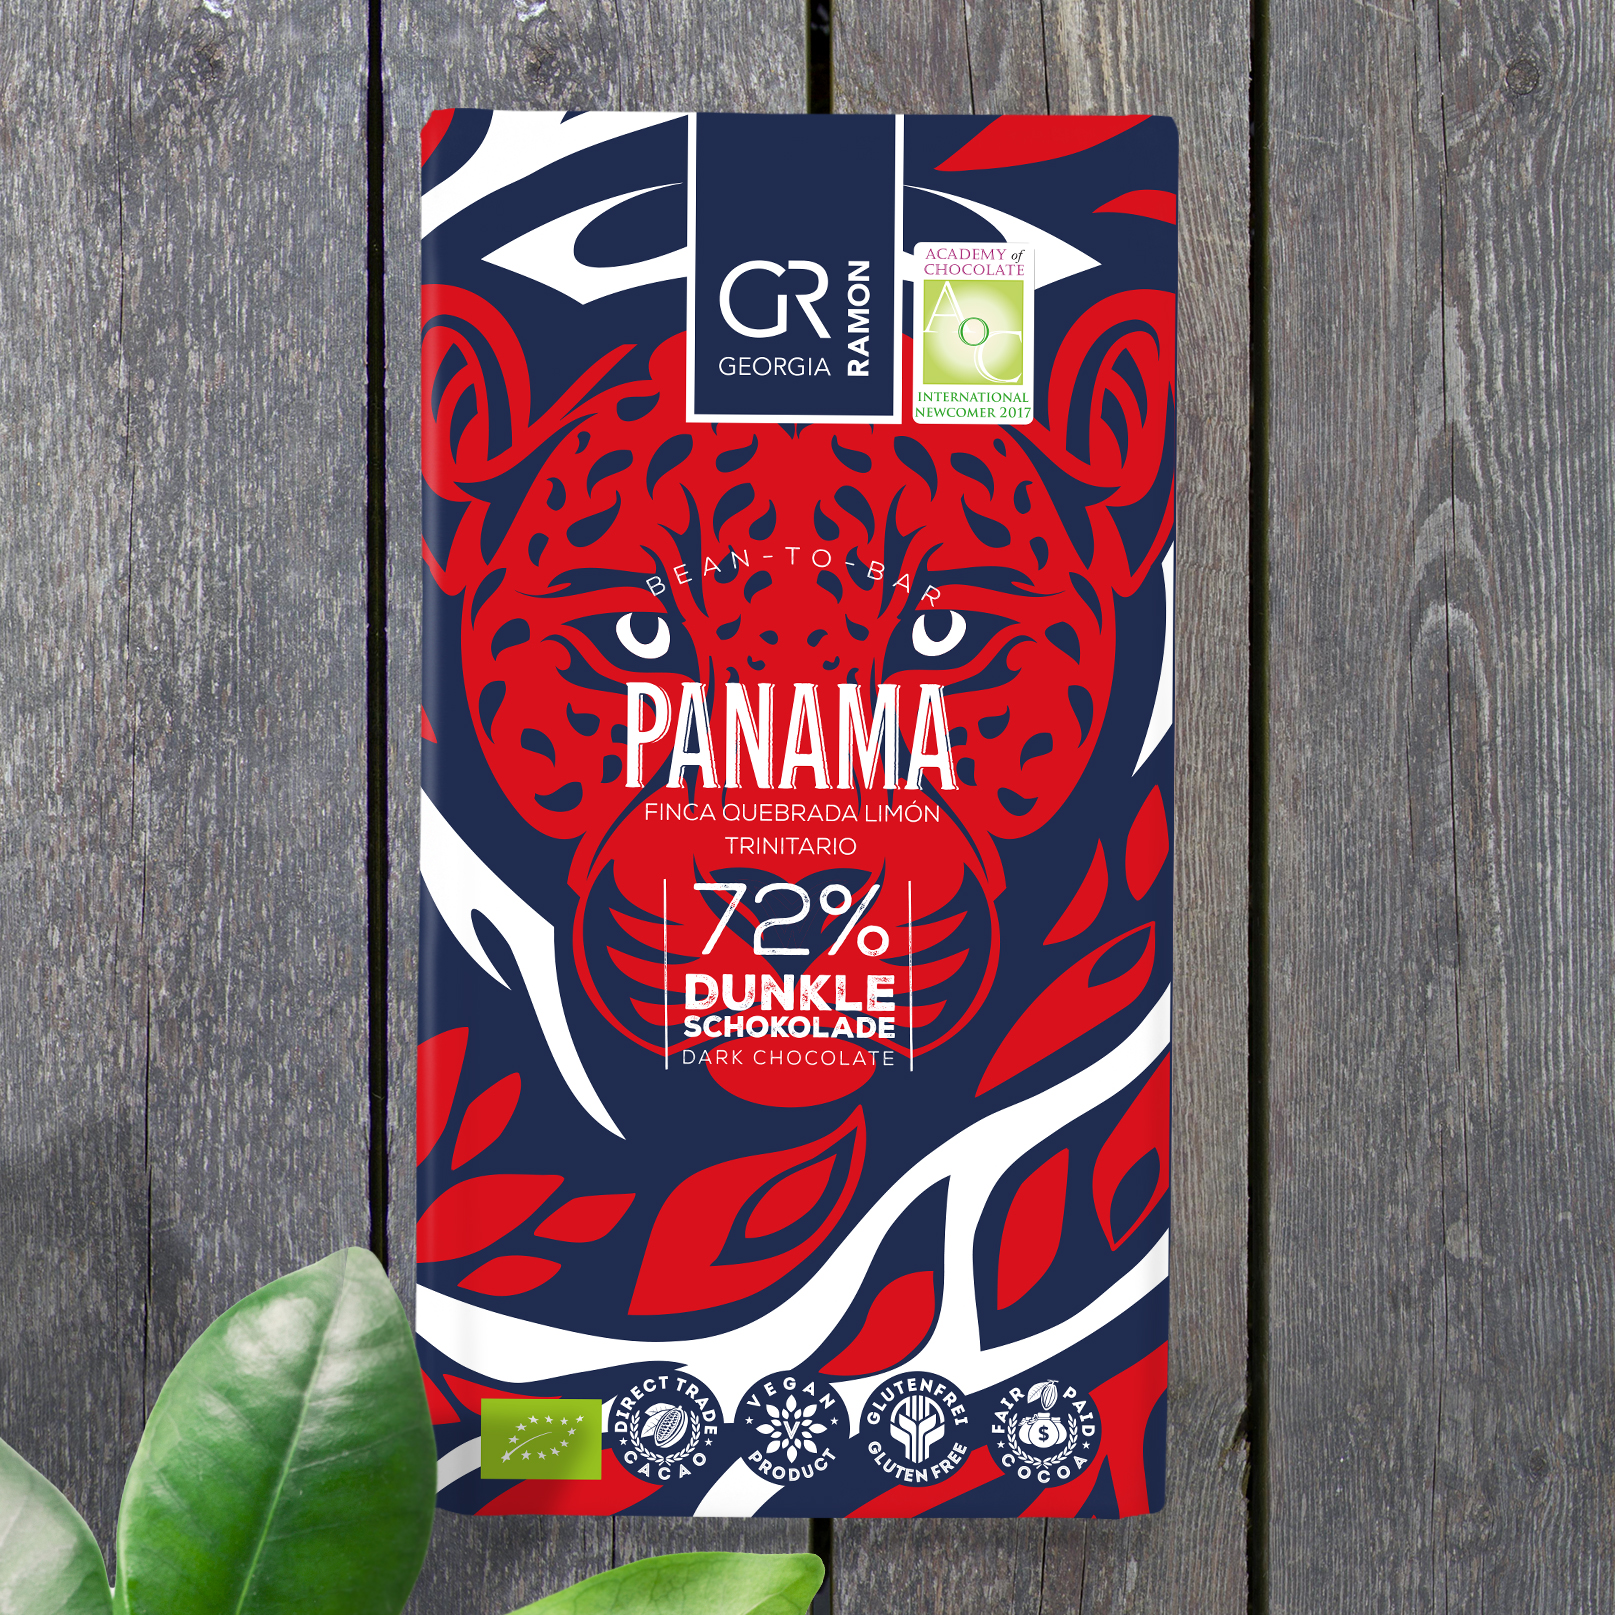 GEORGIA RAMON | Dunkle Schokolade »Panama« 72% | BIO | 50g